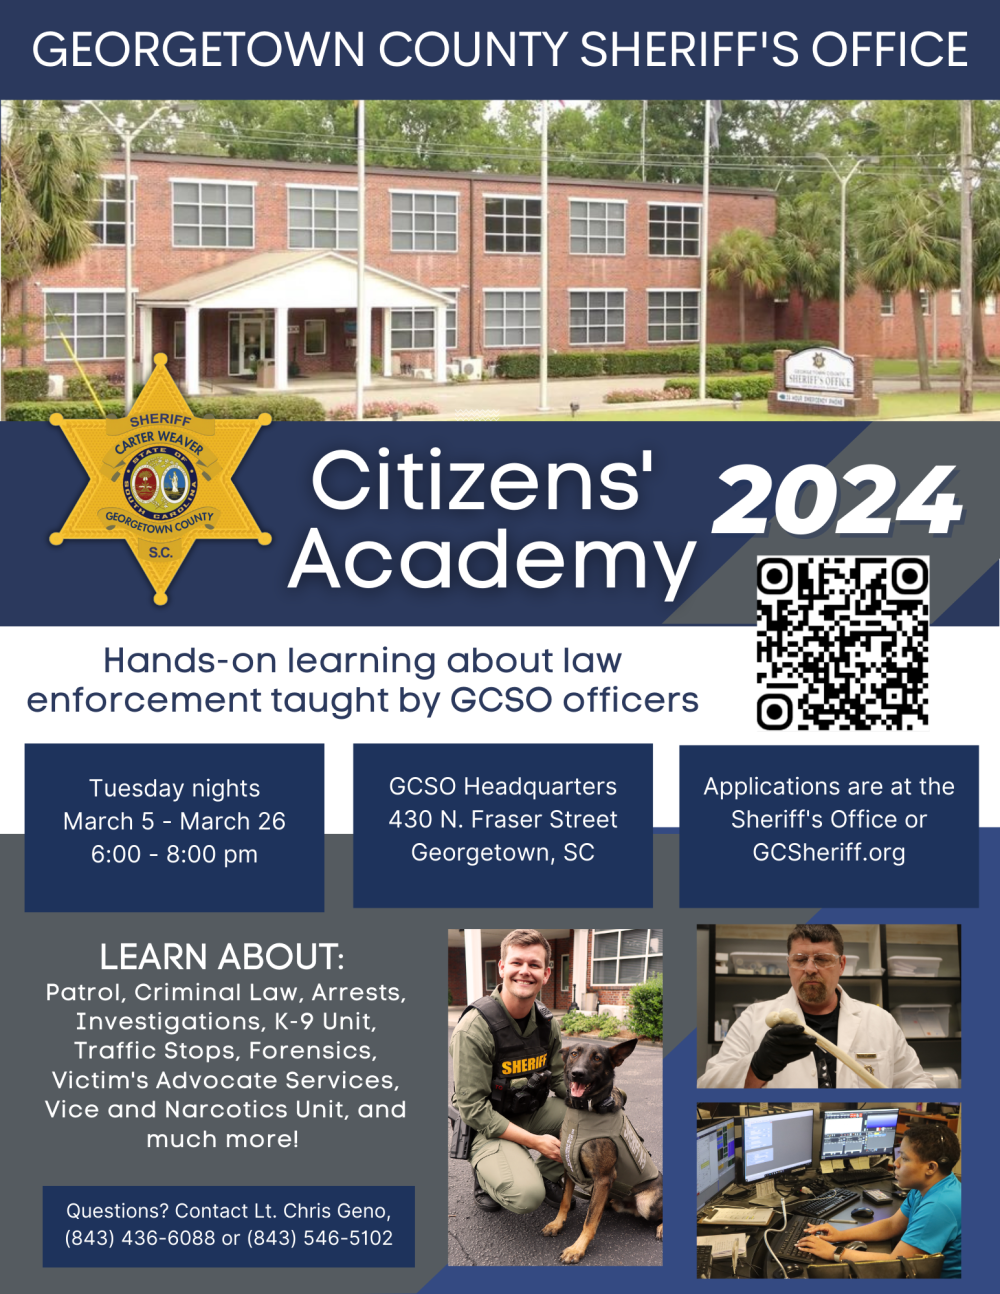 Citizen's Academy begins March 5